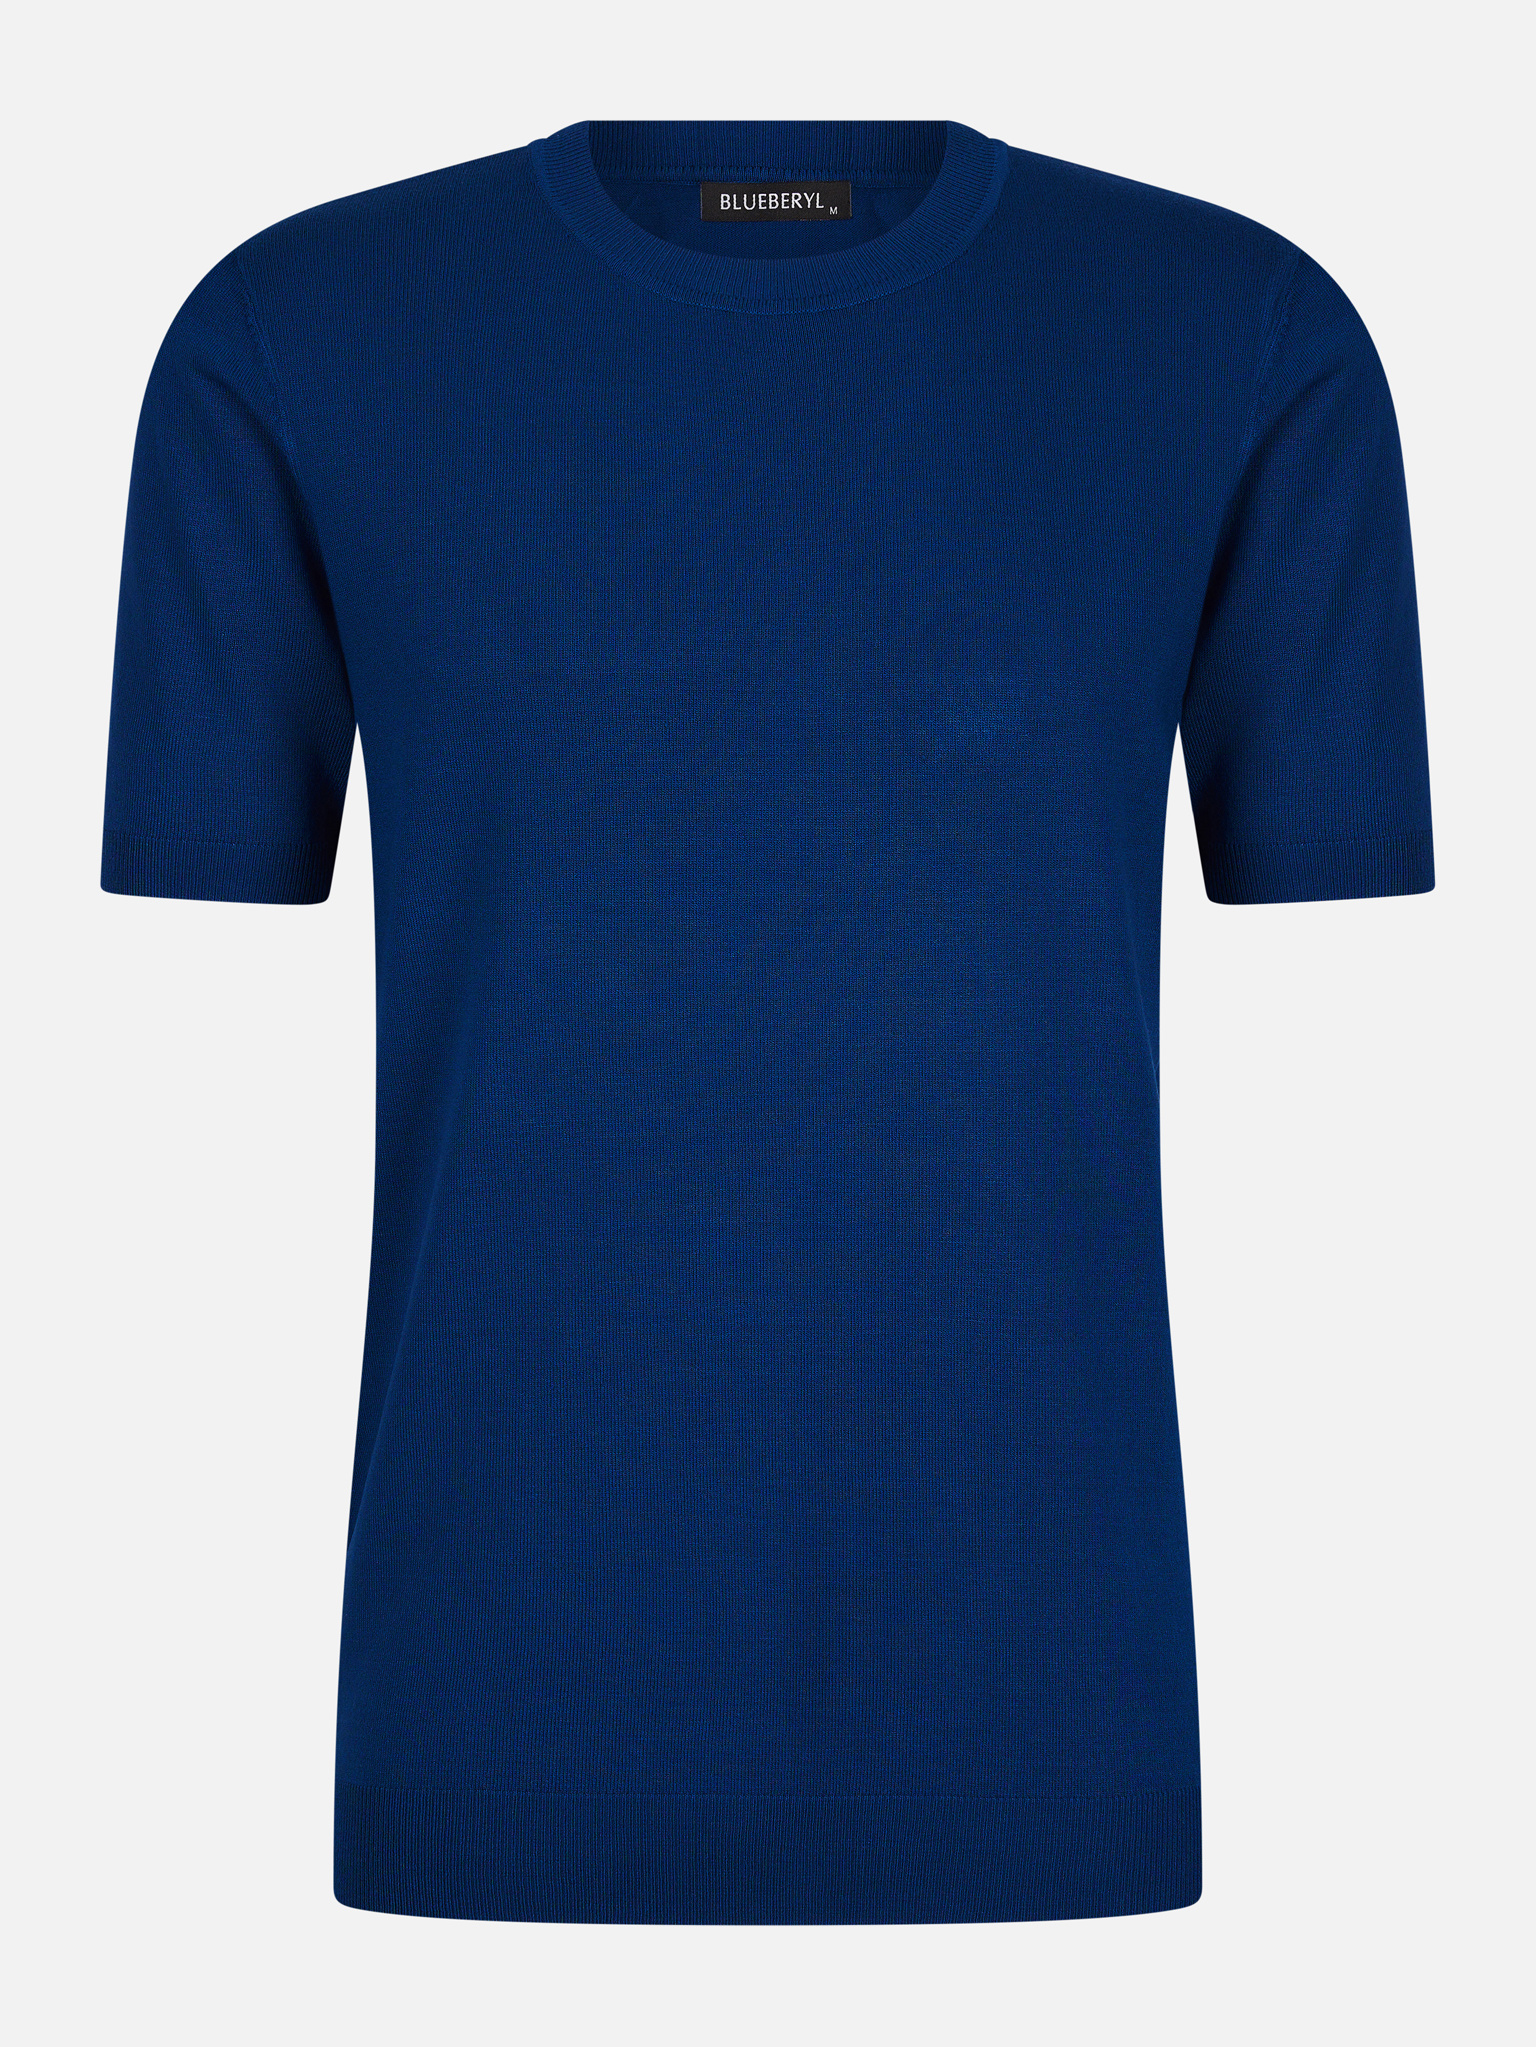 optocht gelijktijdig groot Blauw T-shirt heren kopen voor €29,95 | Valenci - VALENCI